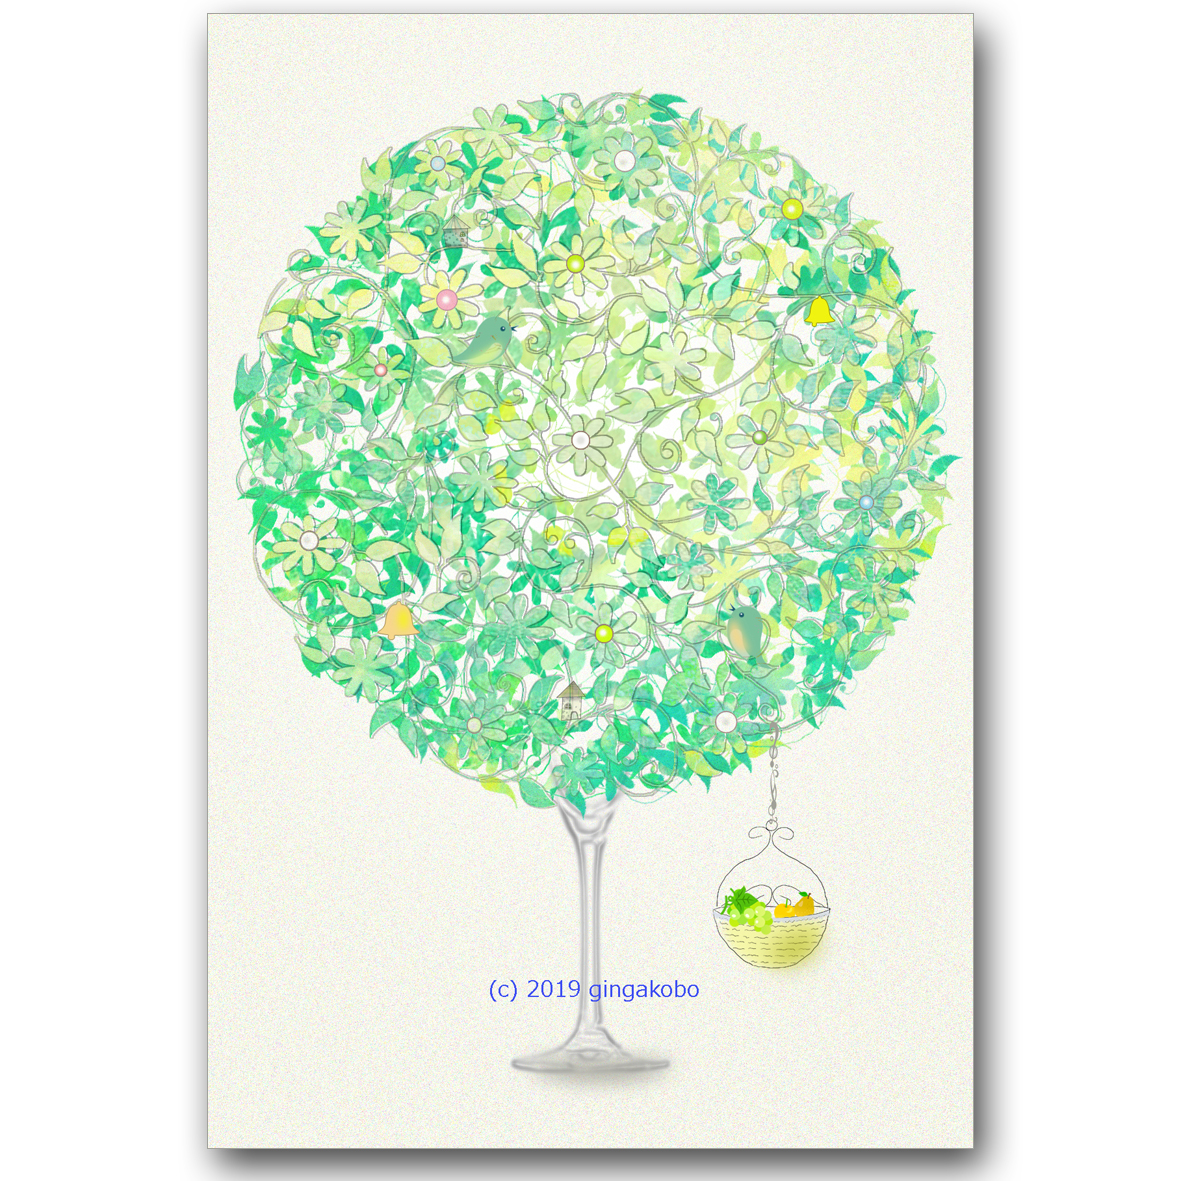 淡樹の教え ほっこり癒しのイラストポストカード2枚組 No 785 Iichi ハンドメイド クラフト作品 手仕事品の通販